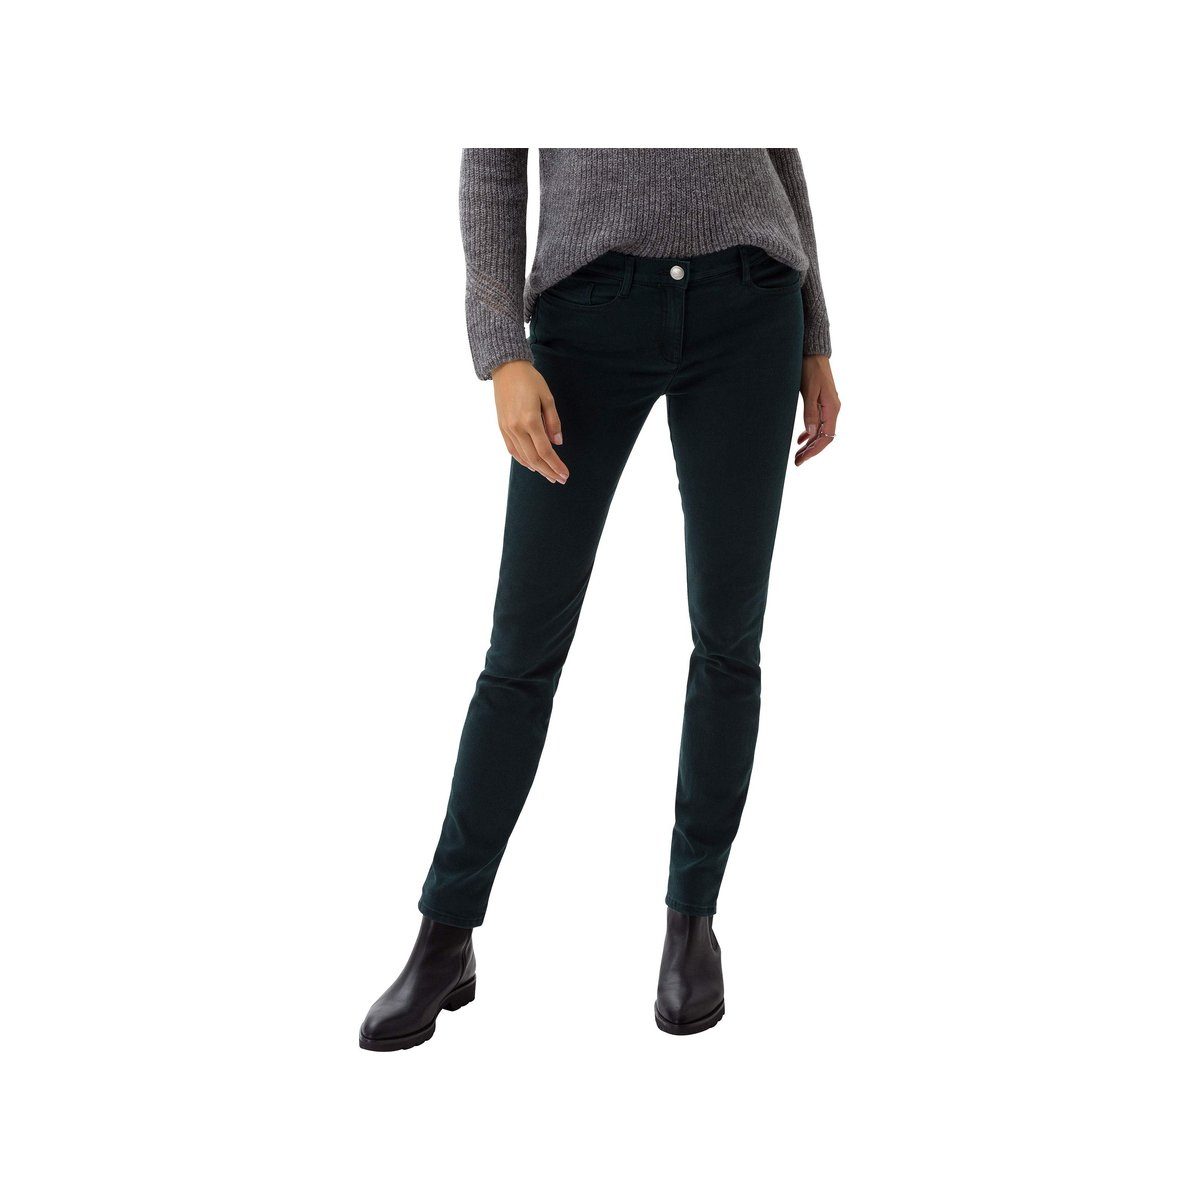 (1-tlg) 5-Pocket-Jeans Brax regular dunkel-grün